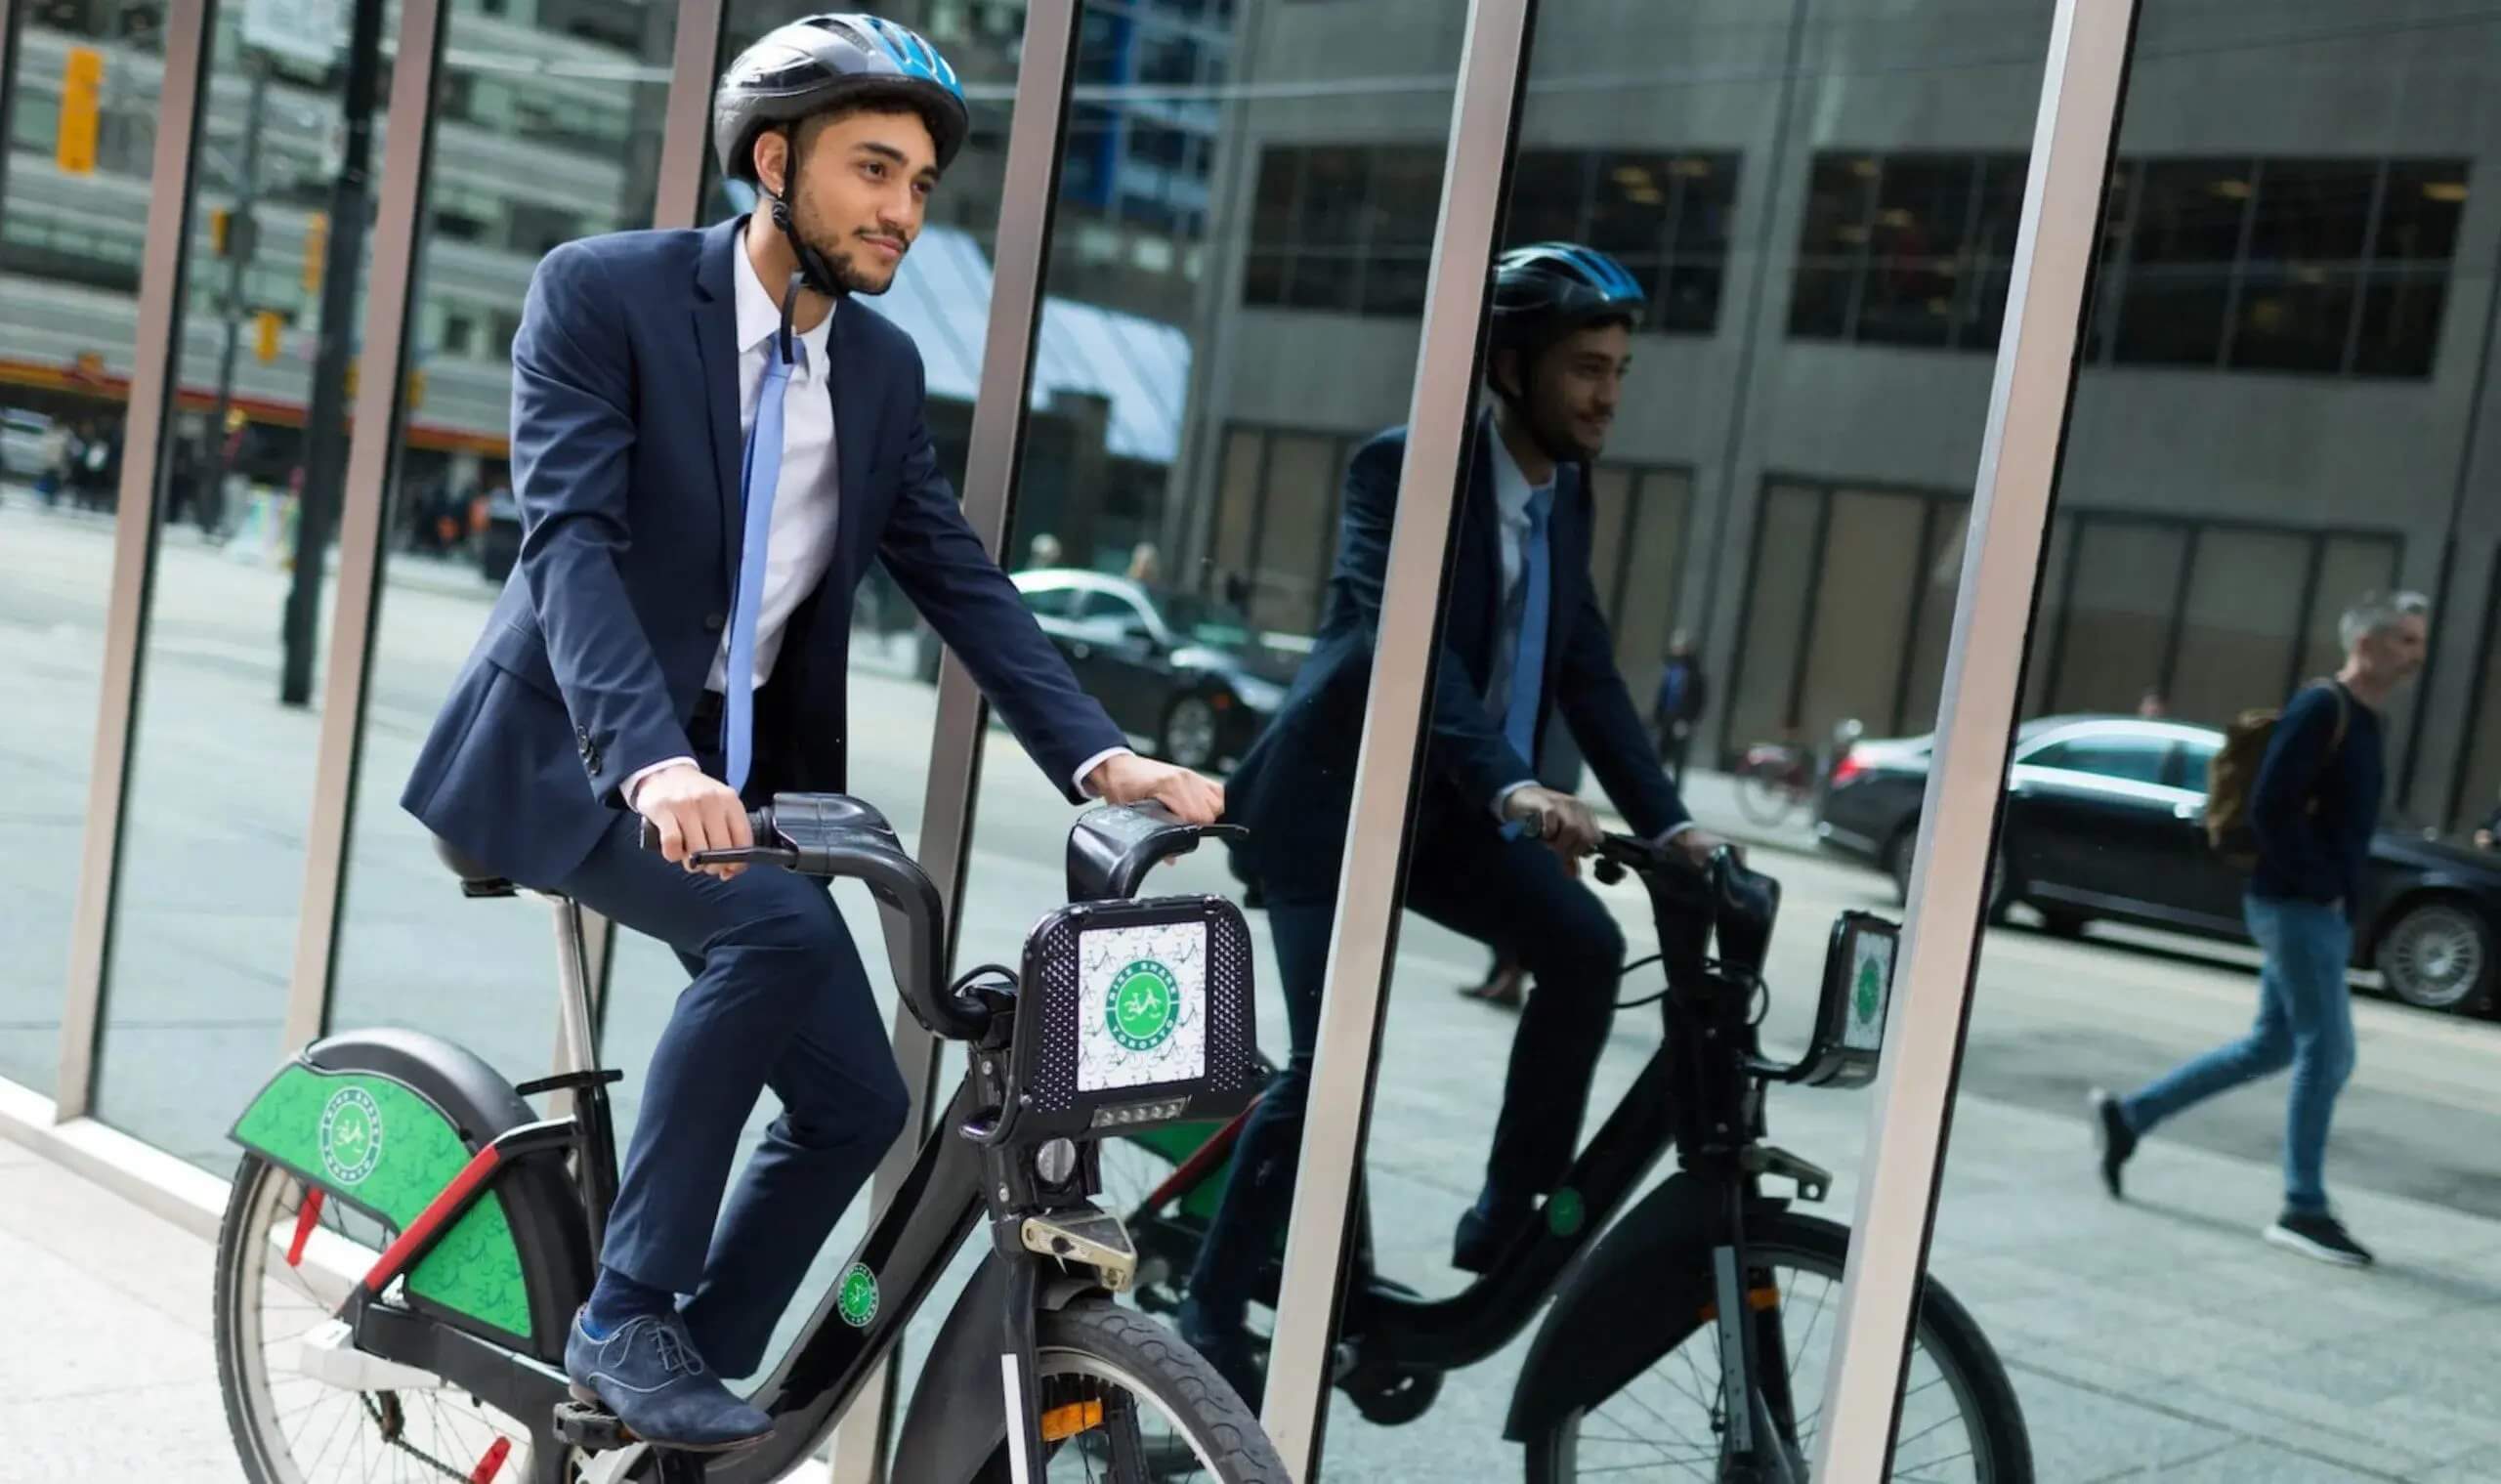 man on a bike wearing a suit